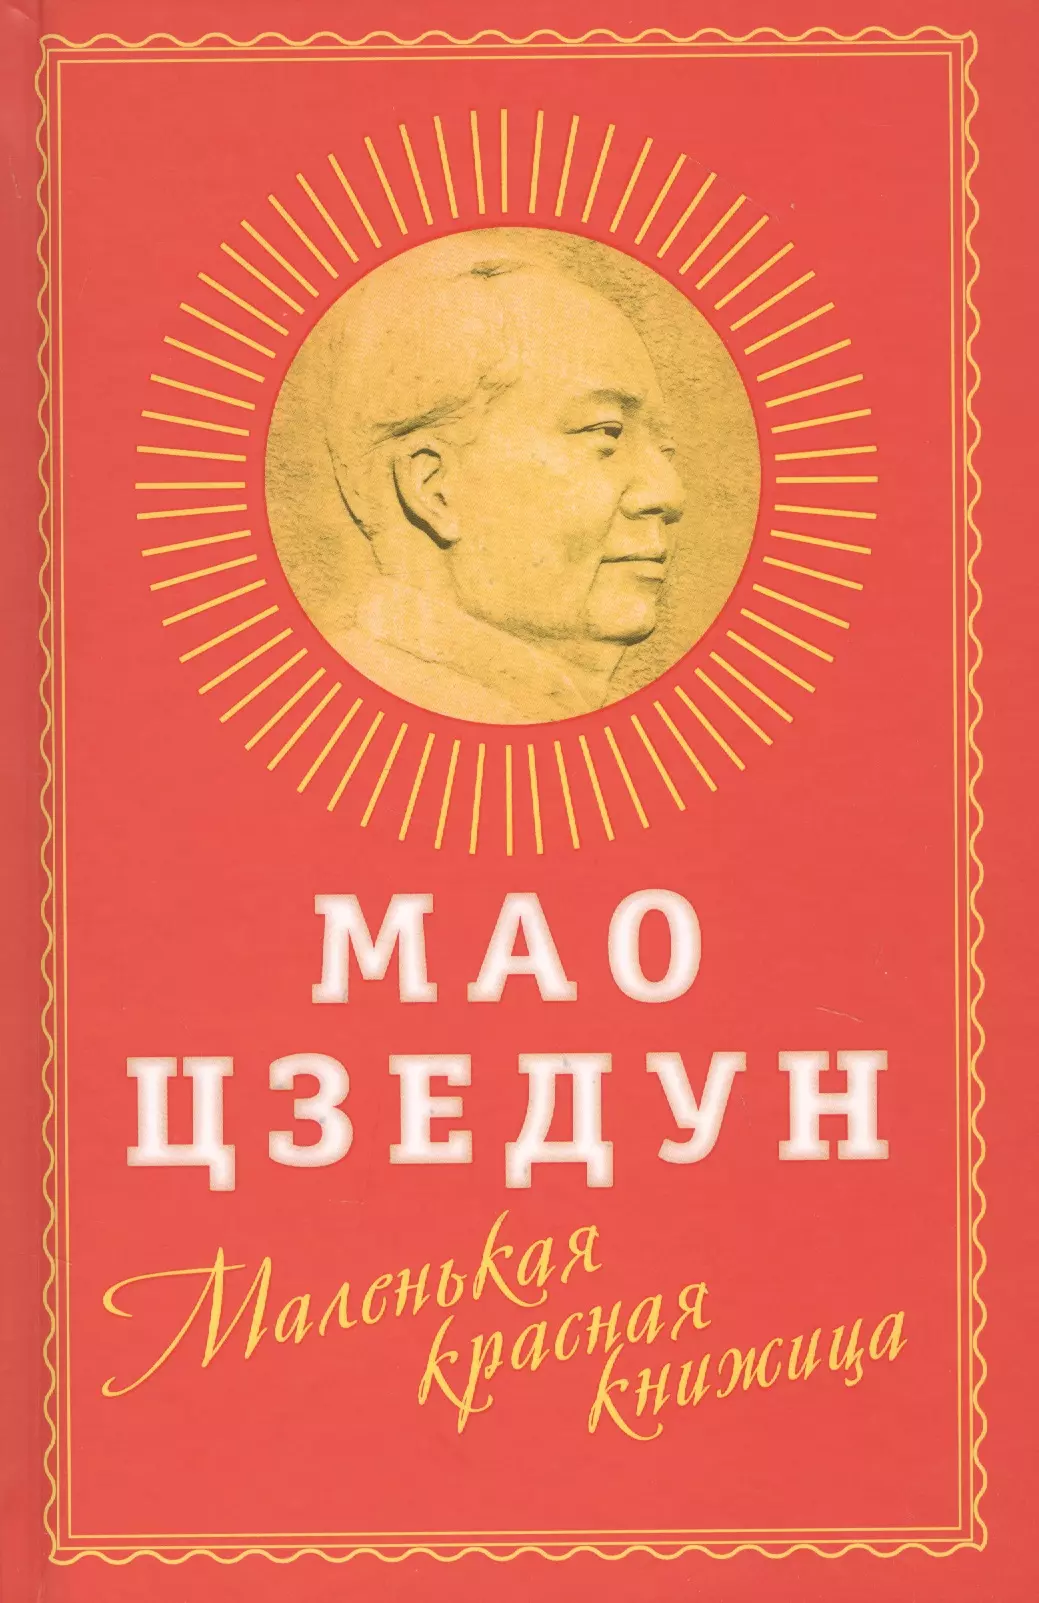 сяо мао ангел Мао Цзэдун Маленькая красная книжица